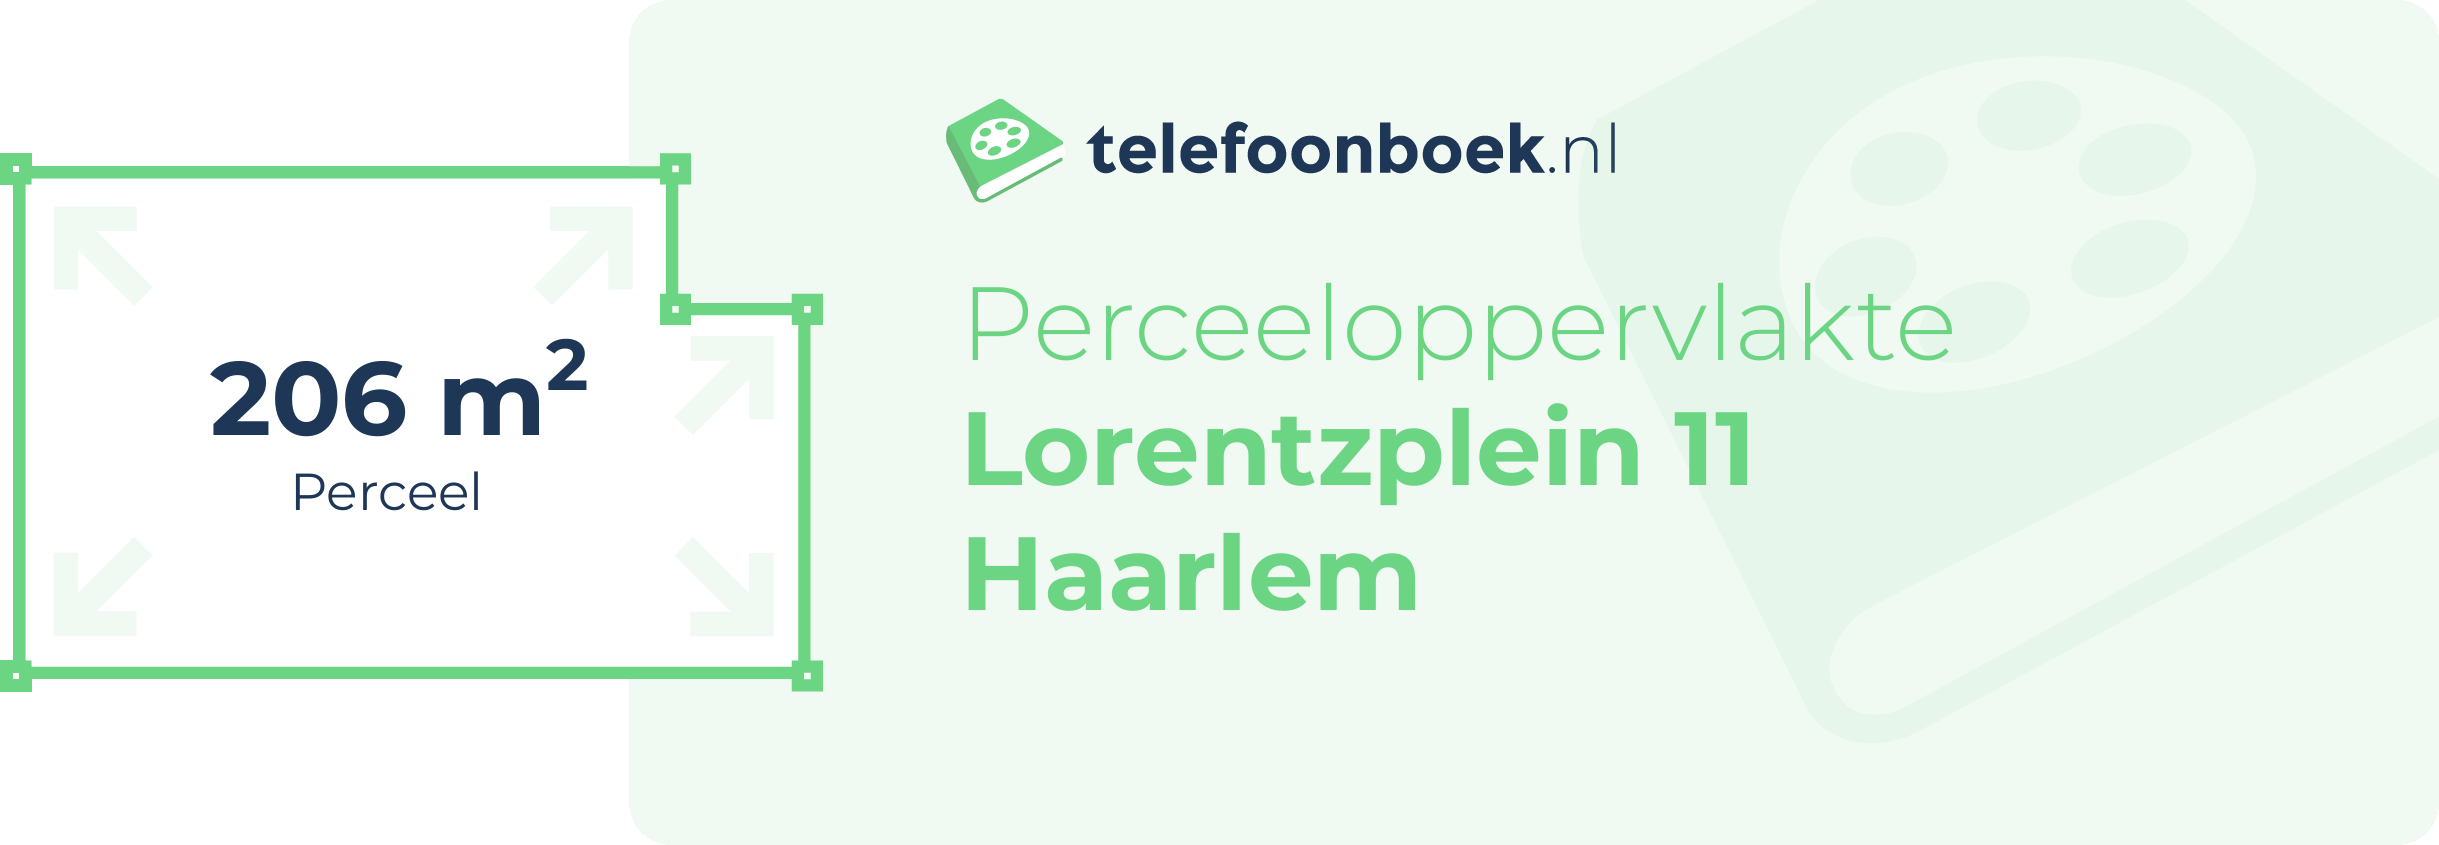 Perceeloppervlakte Lorentzplein 11 Haarlem